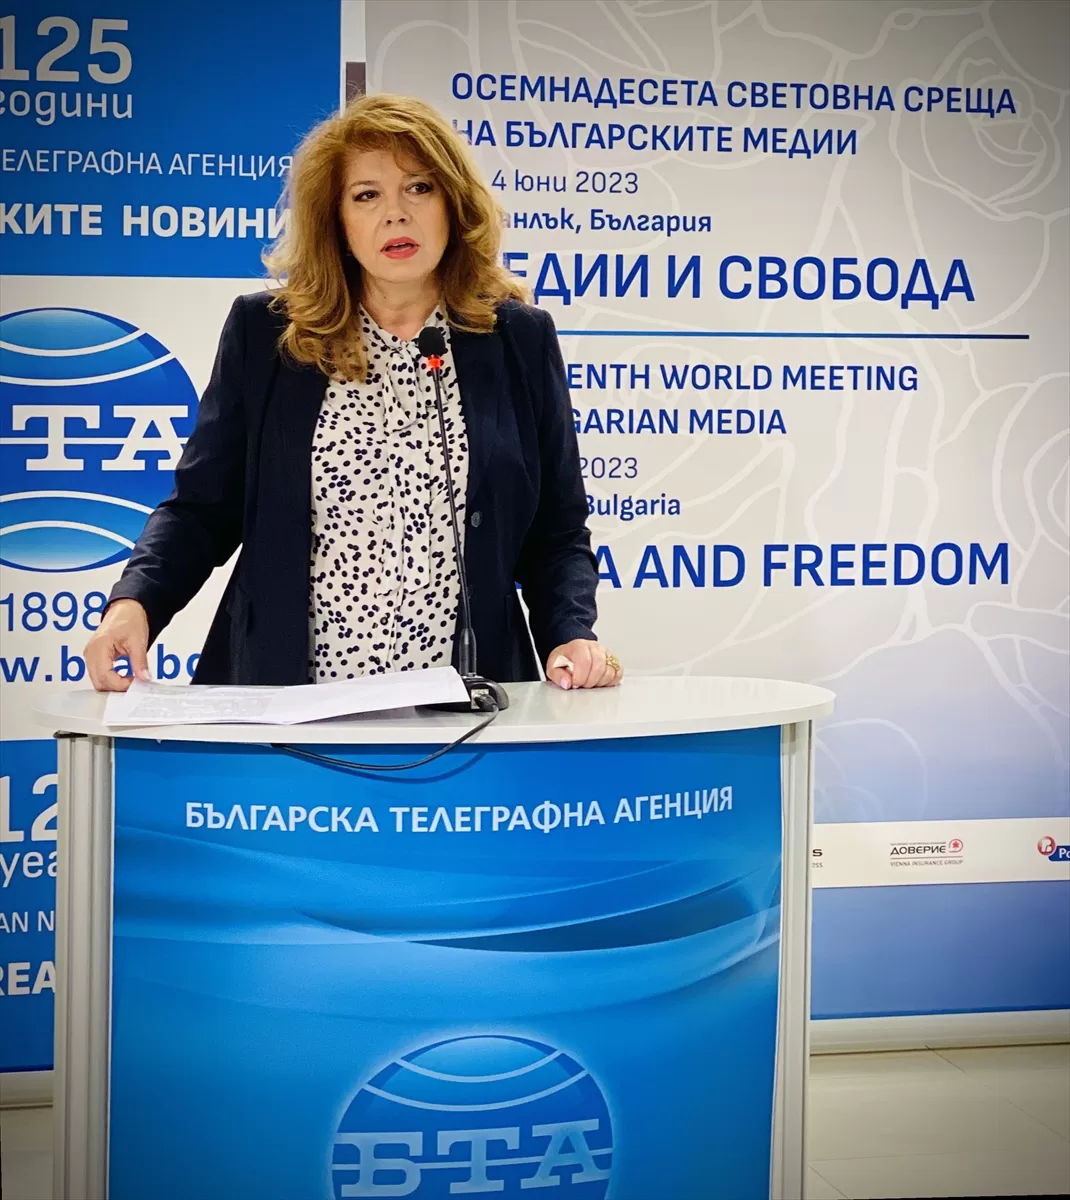 Bulgaristan'da “18. Yurt Dışındaki Bulgar Medyası Dünya Toplantısı” başladı